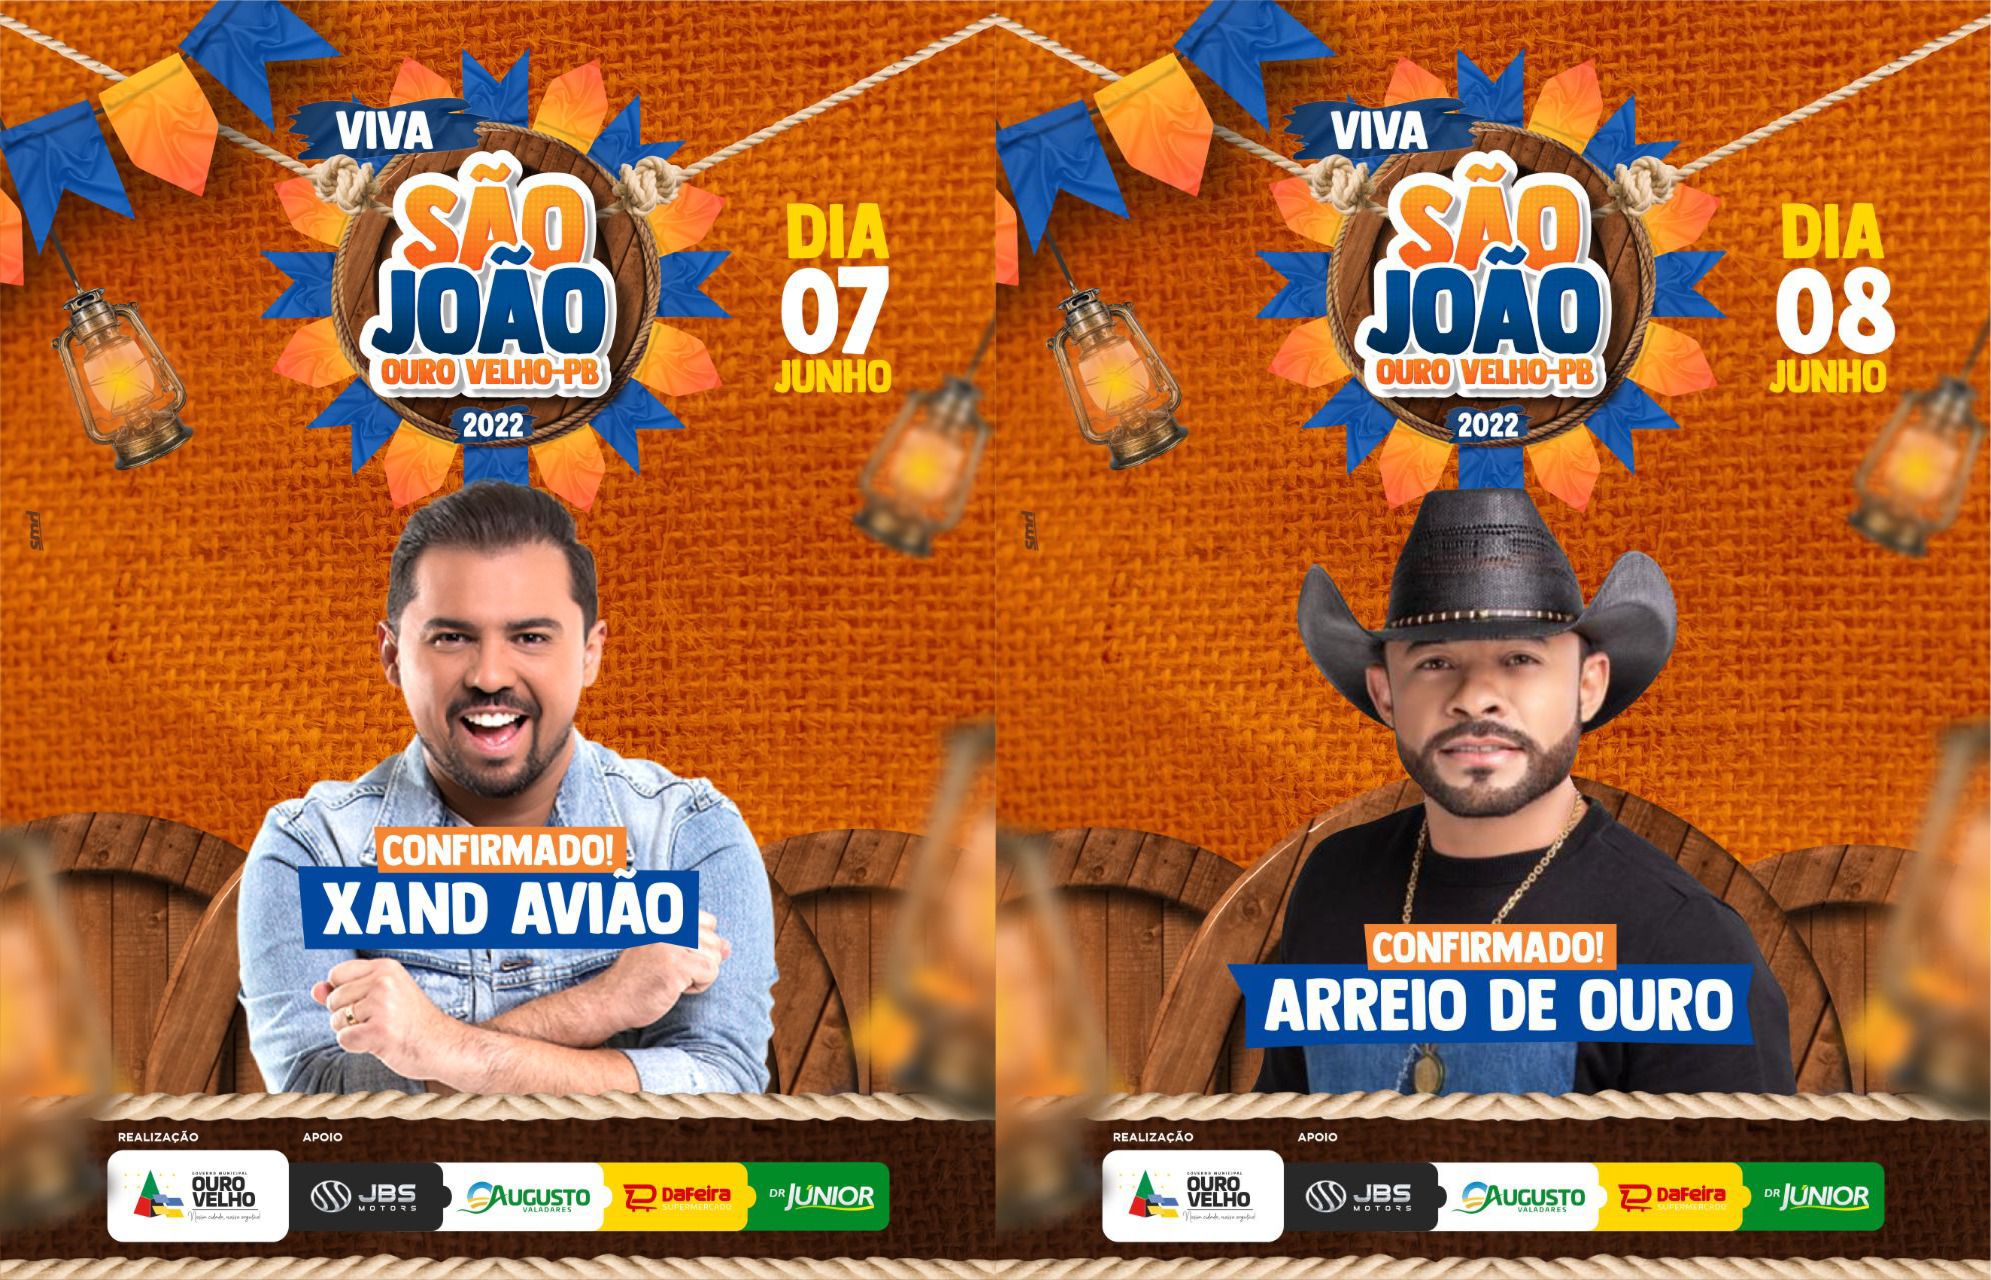 You are currently viewing Prefeitura de Ouro Velho já confirmou duas atrações para o São João 2022